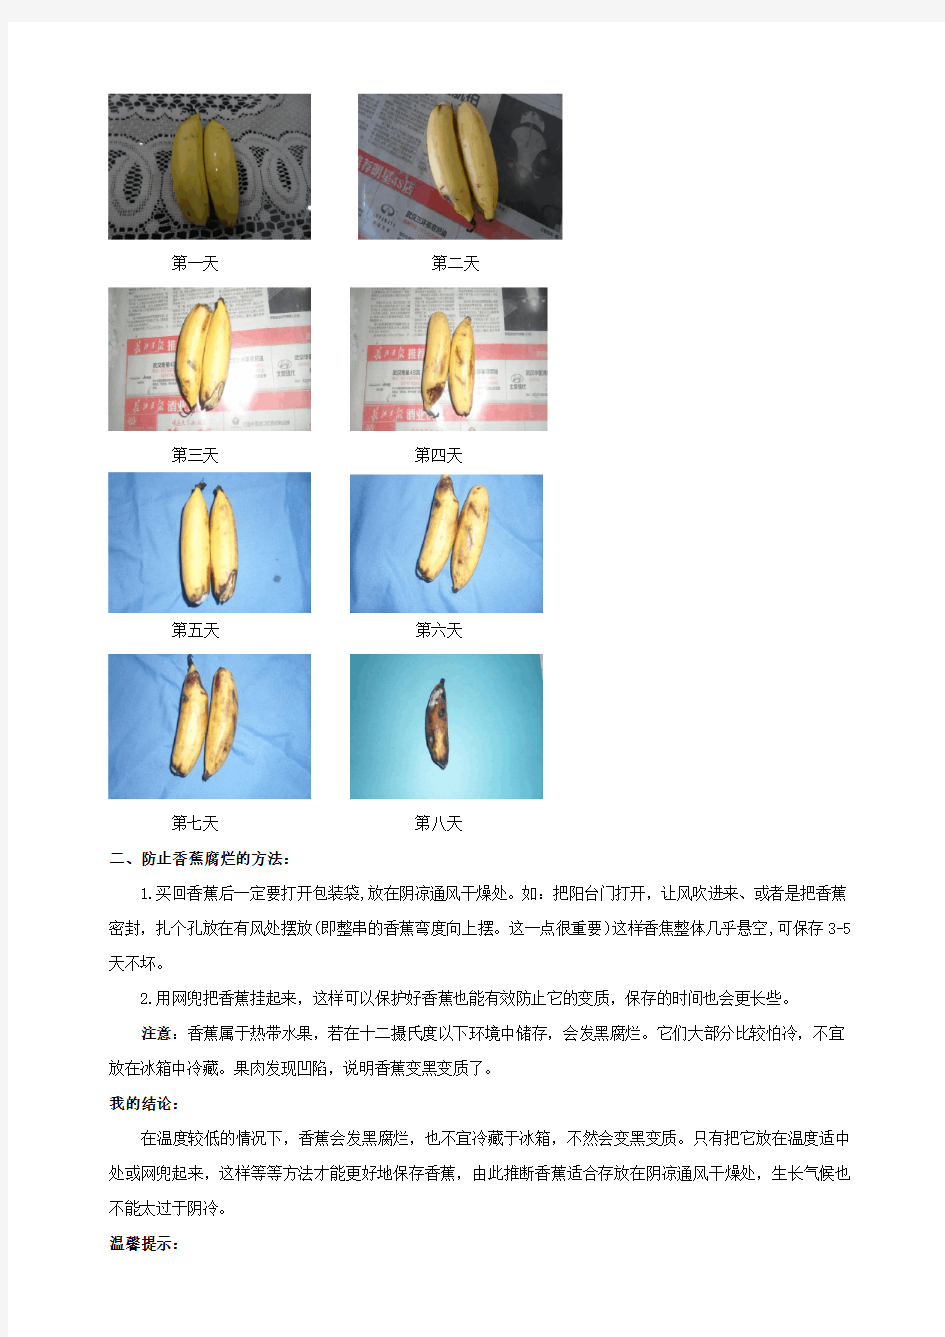 香蕉腐烂过程的研究六⑤(吴欣雨)